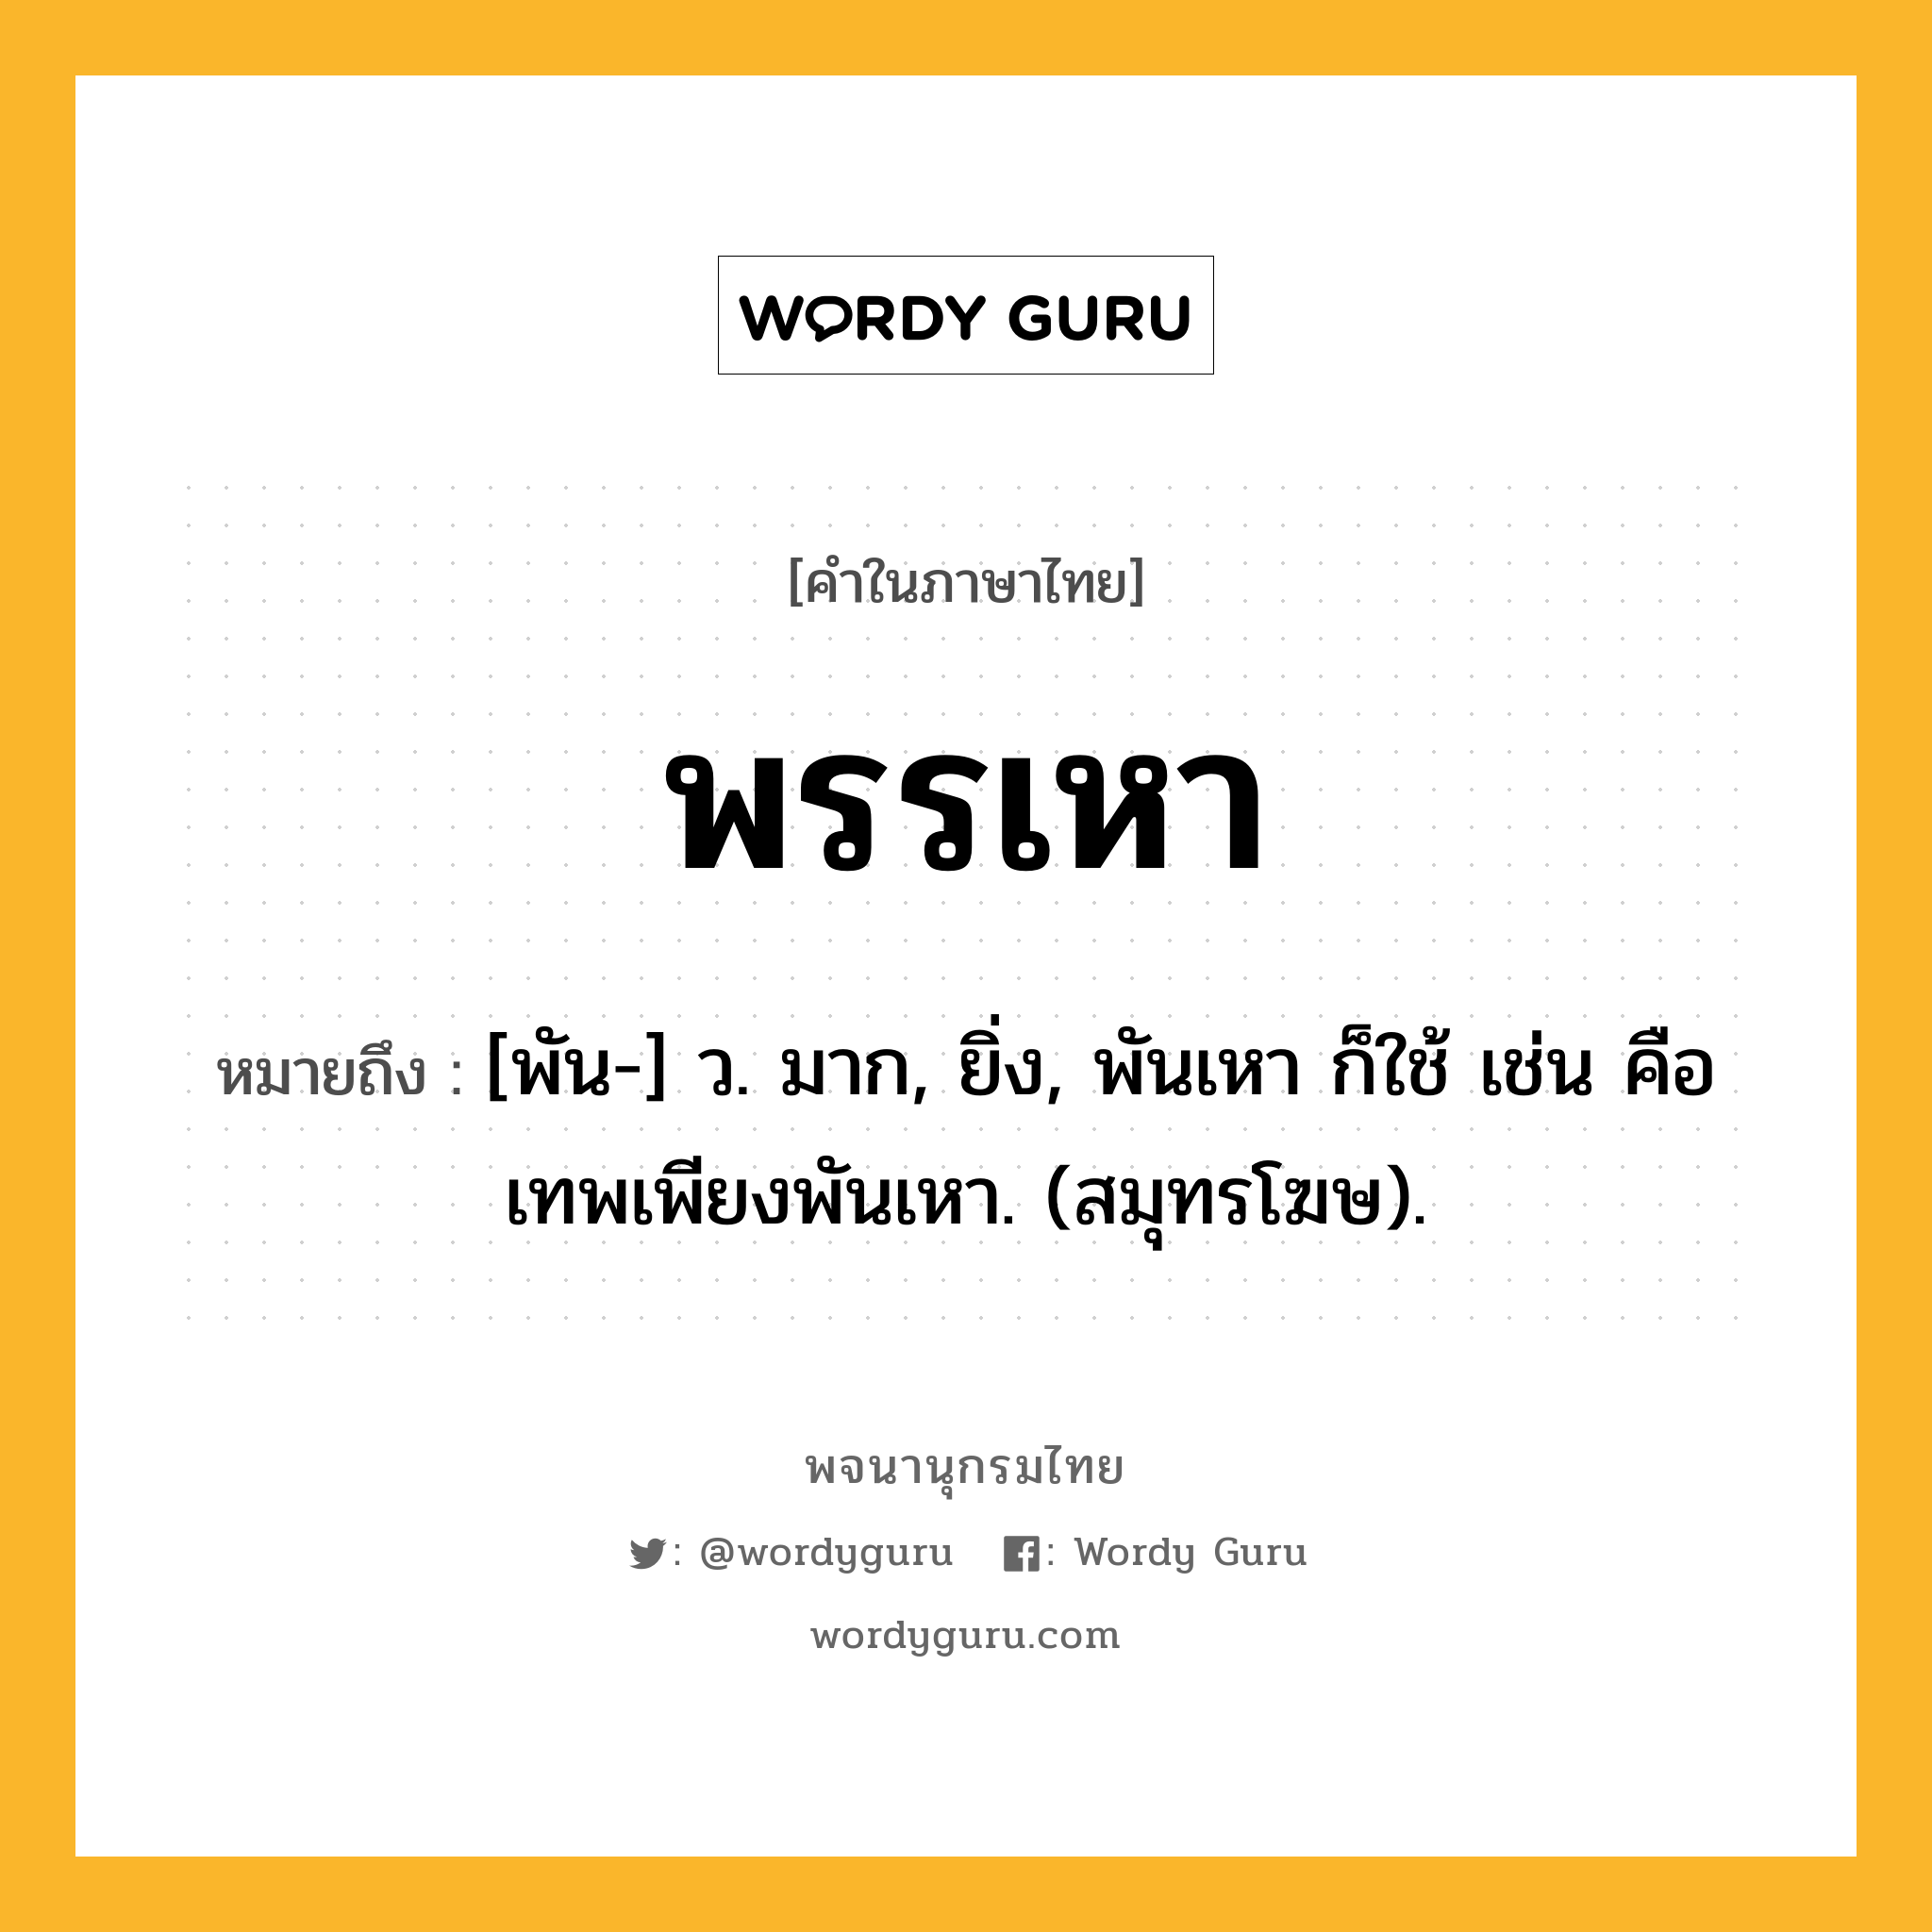 พรรเหา หมายถึงอะไร?, คำในภาษาไทย พรรเหา หมายถึง [พัน-] ว. มาก, ยิ่ง, พันเหา ก็ใช้ เช่น คือ เทพเพียงพันเหา. (สมุทรโฆษ).